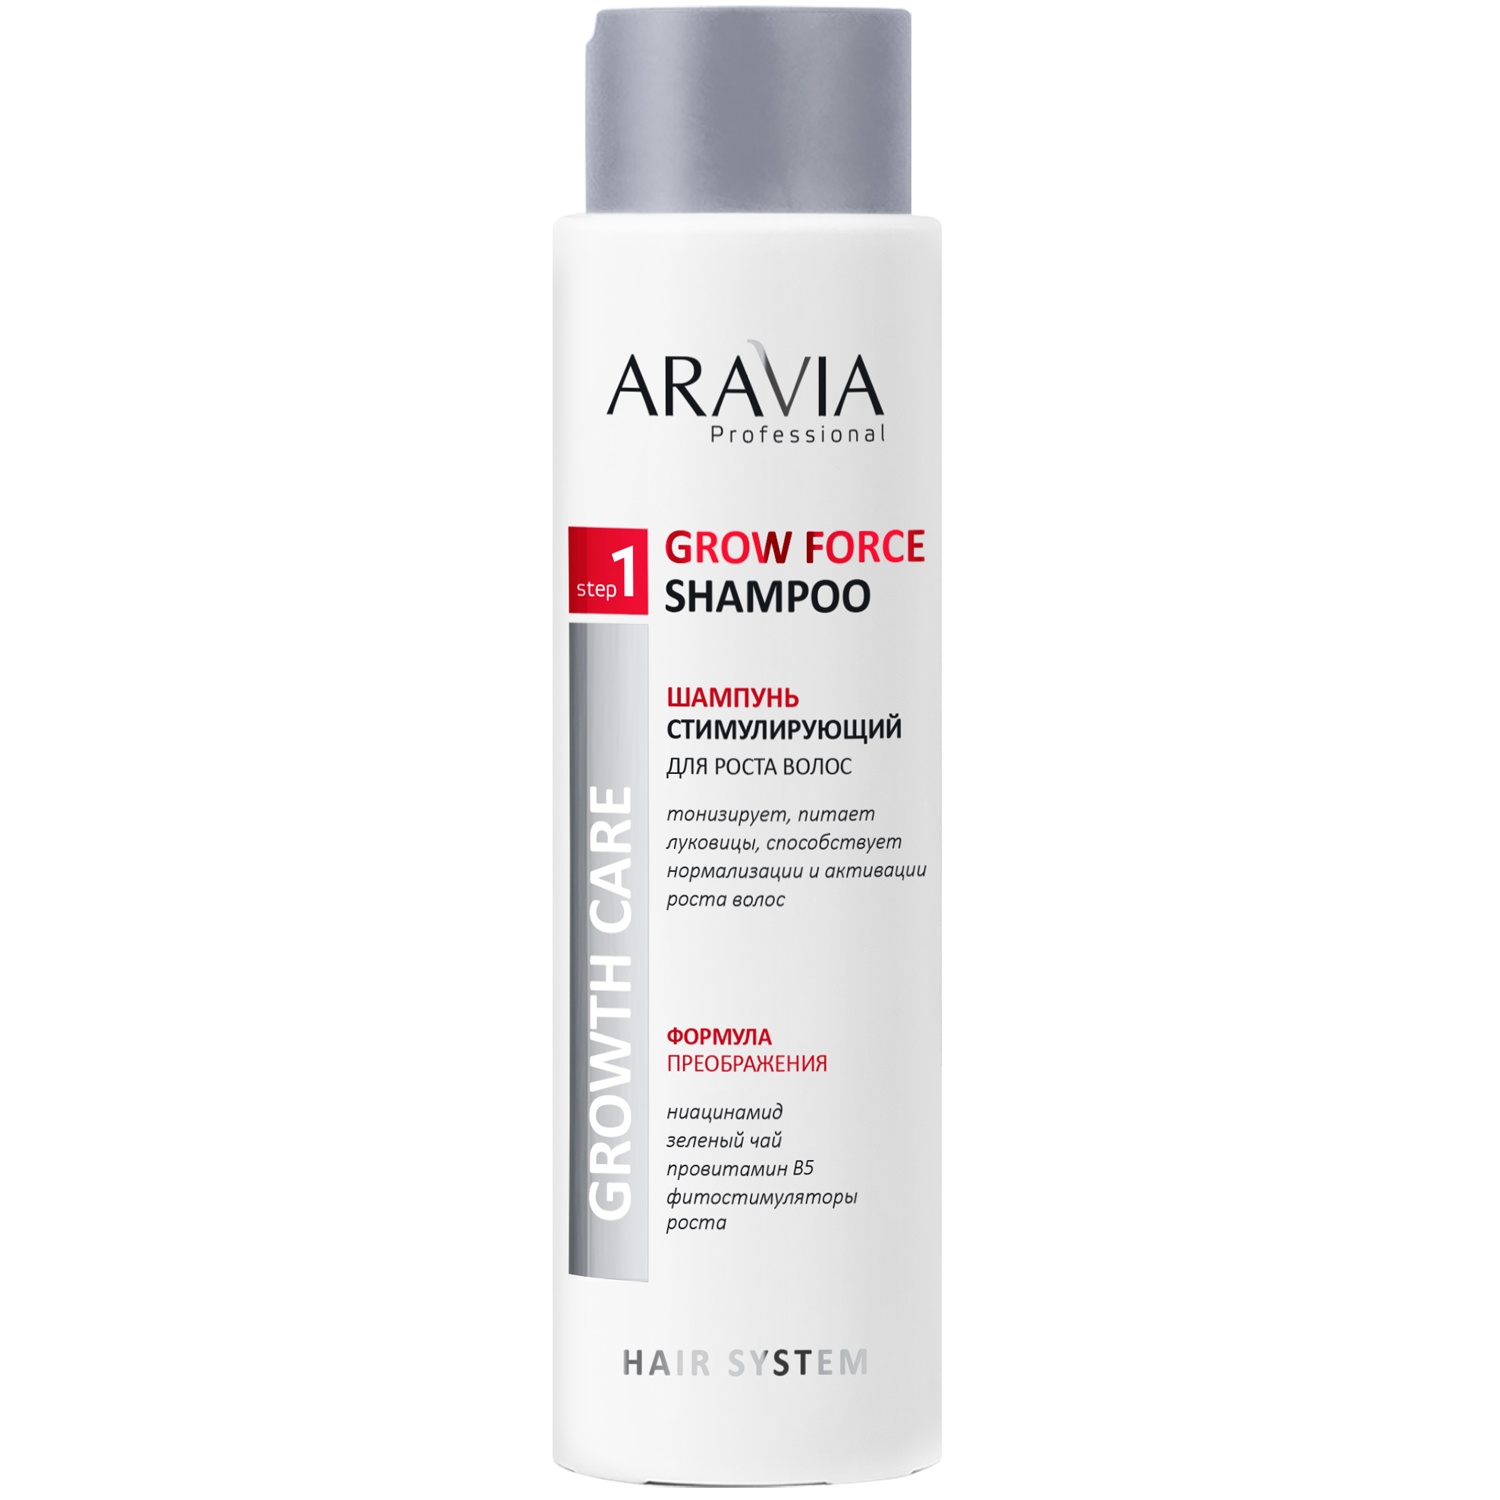 Aravia Professional Шампунь стимулирующий, для роста волос Grow Force Shampoo, 420 мл (Aravia Professional, Уход за волосами)